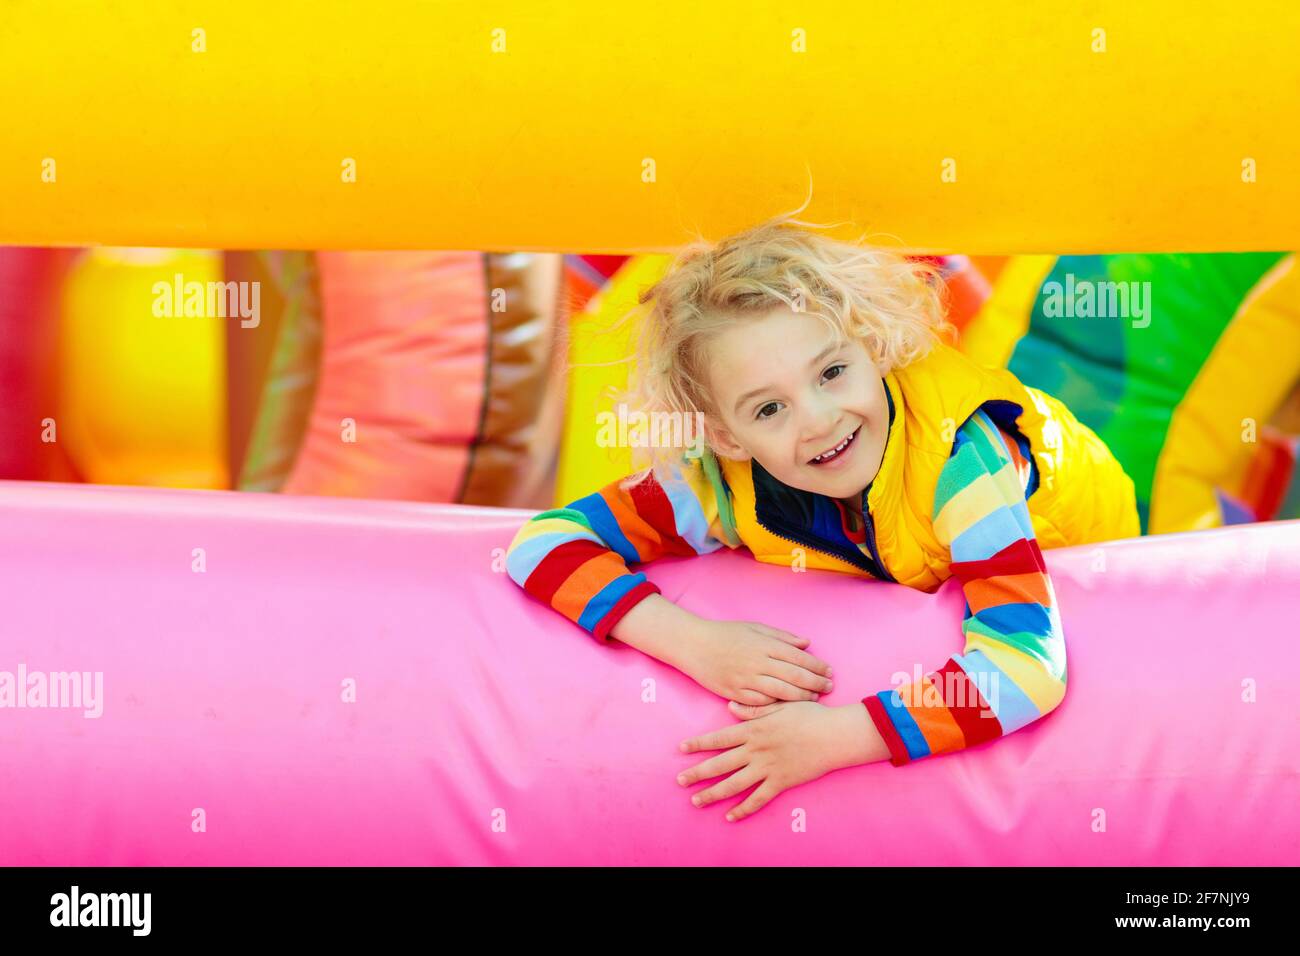 Kinder springen auf buntem Spielplatz-Trampolin. Kinder springen in aufblasbare Sprungburg auf Kindergarten Geburtstagsparty Aktivität und Spielzentrum Stockfoto